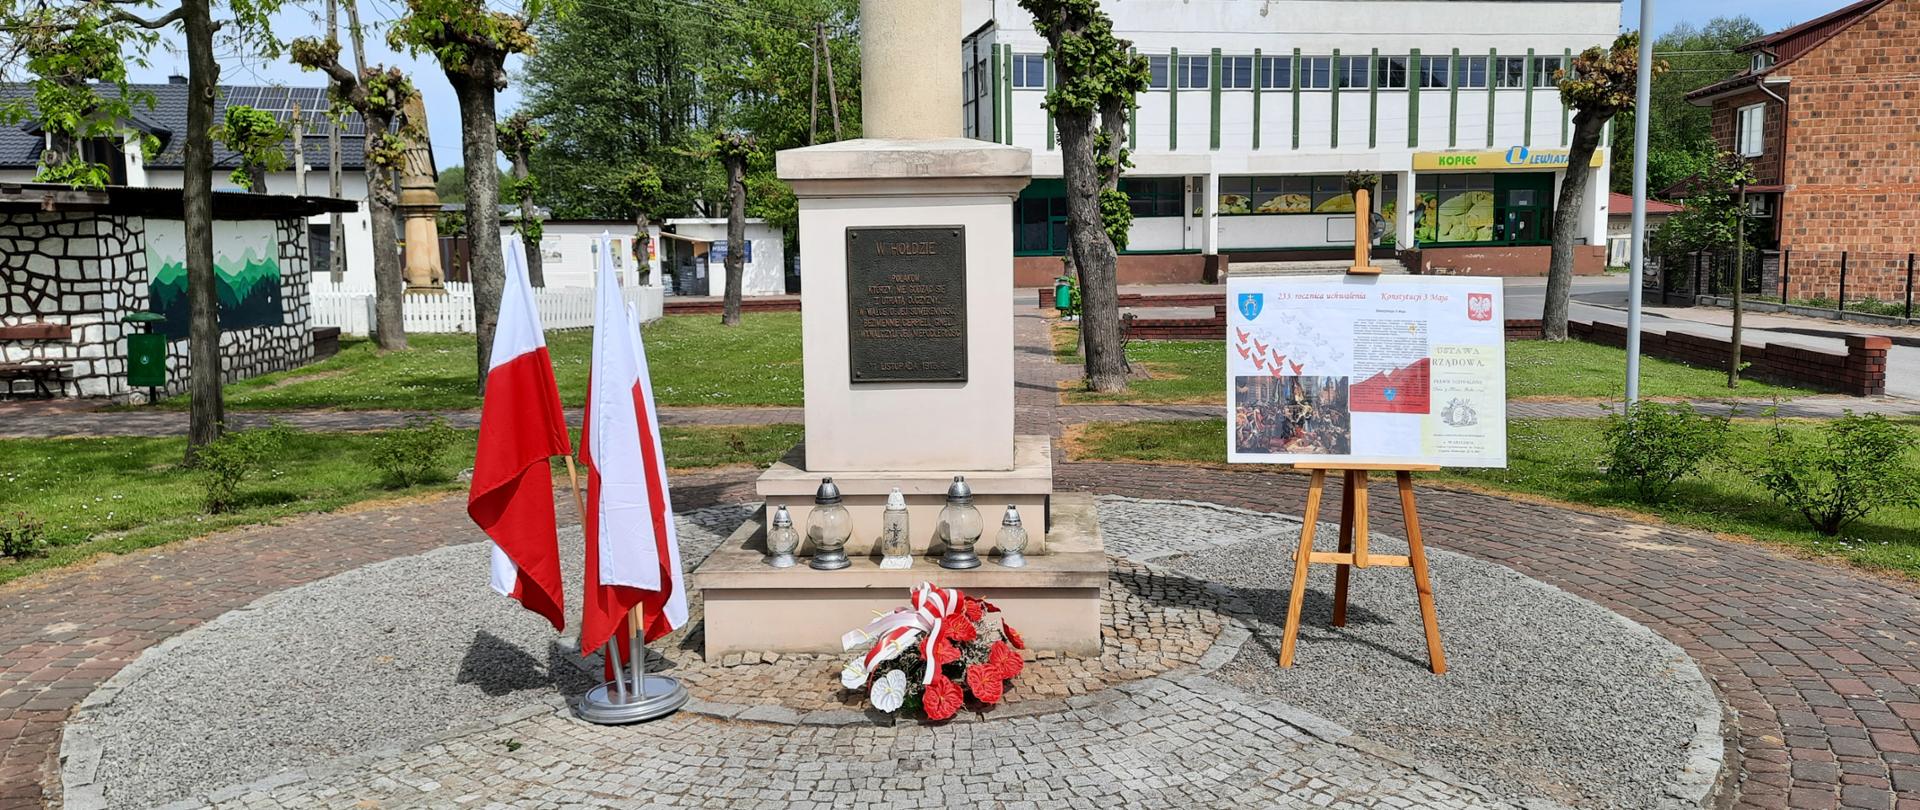 Zdjęcie przedstawia Pomnik Wolności w parku w Wielgomłynach. Pod pomnikiem kwiaty i znicze. Z lewej strony w stojaku 3 flagi biało-czerwone, z prawej sztaluga z rysem historycznym uchwalenia Konstytucji 3 Maja.